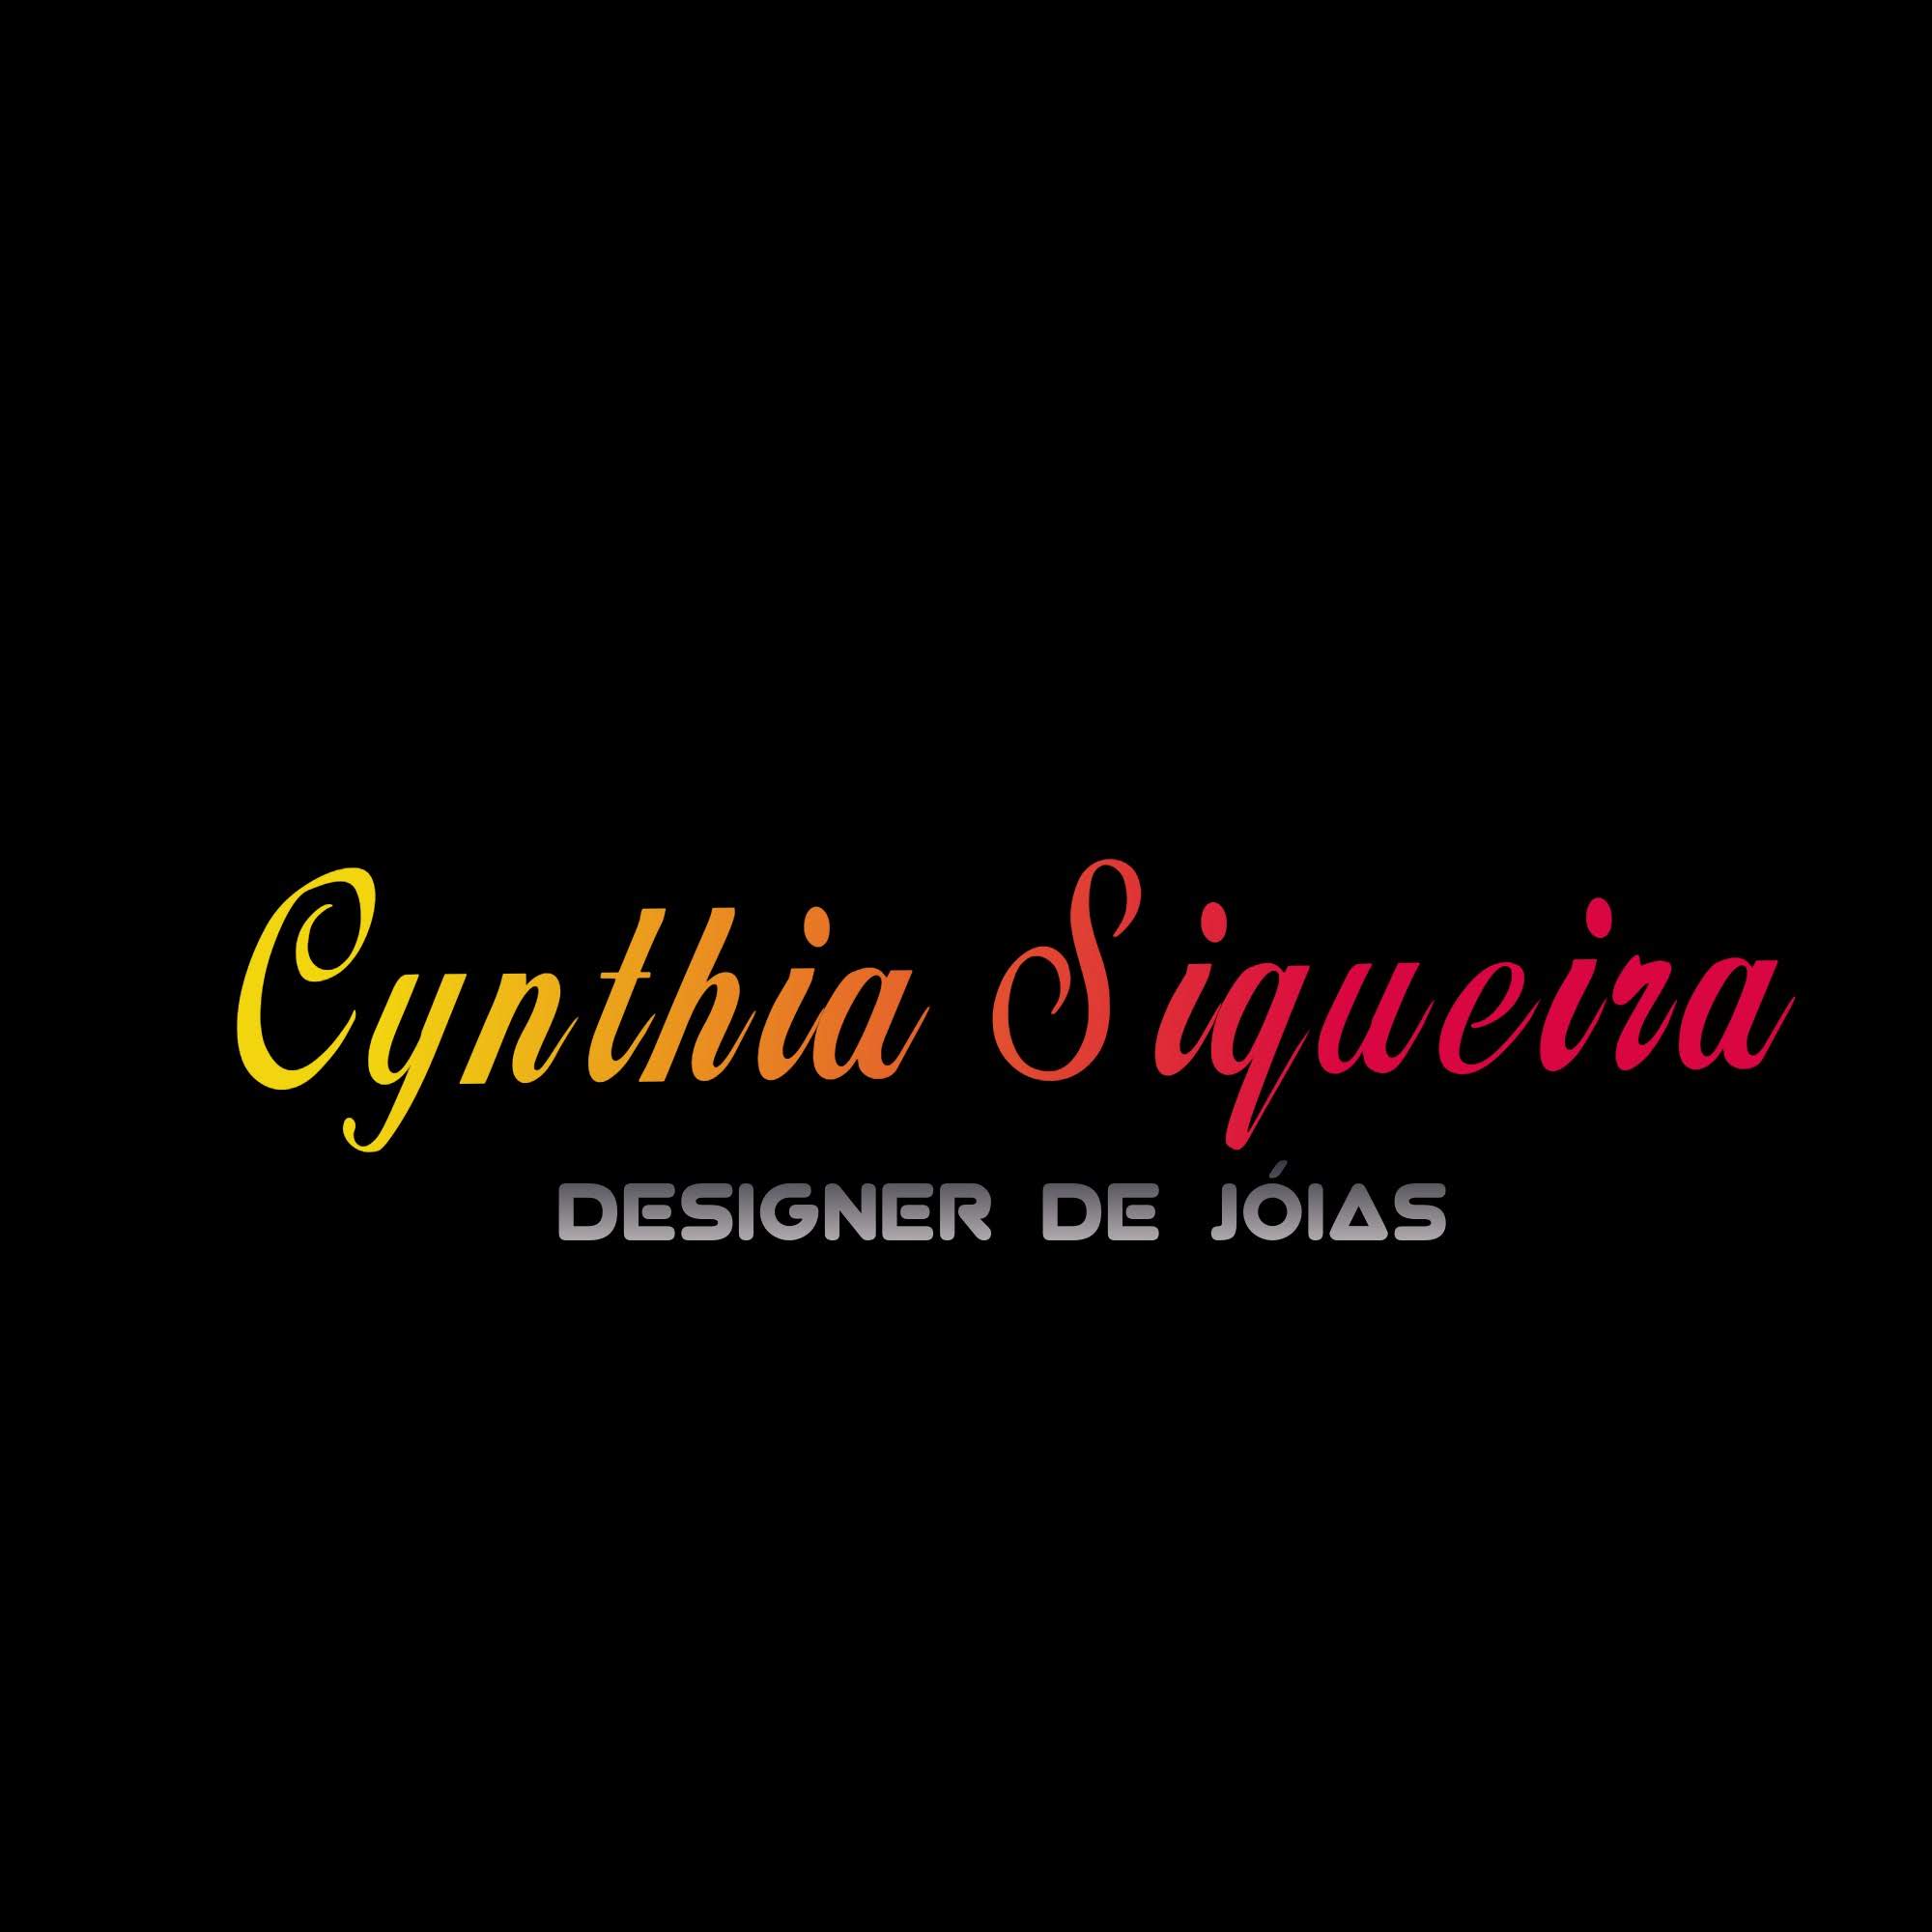 Cynthia Siqueira